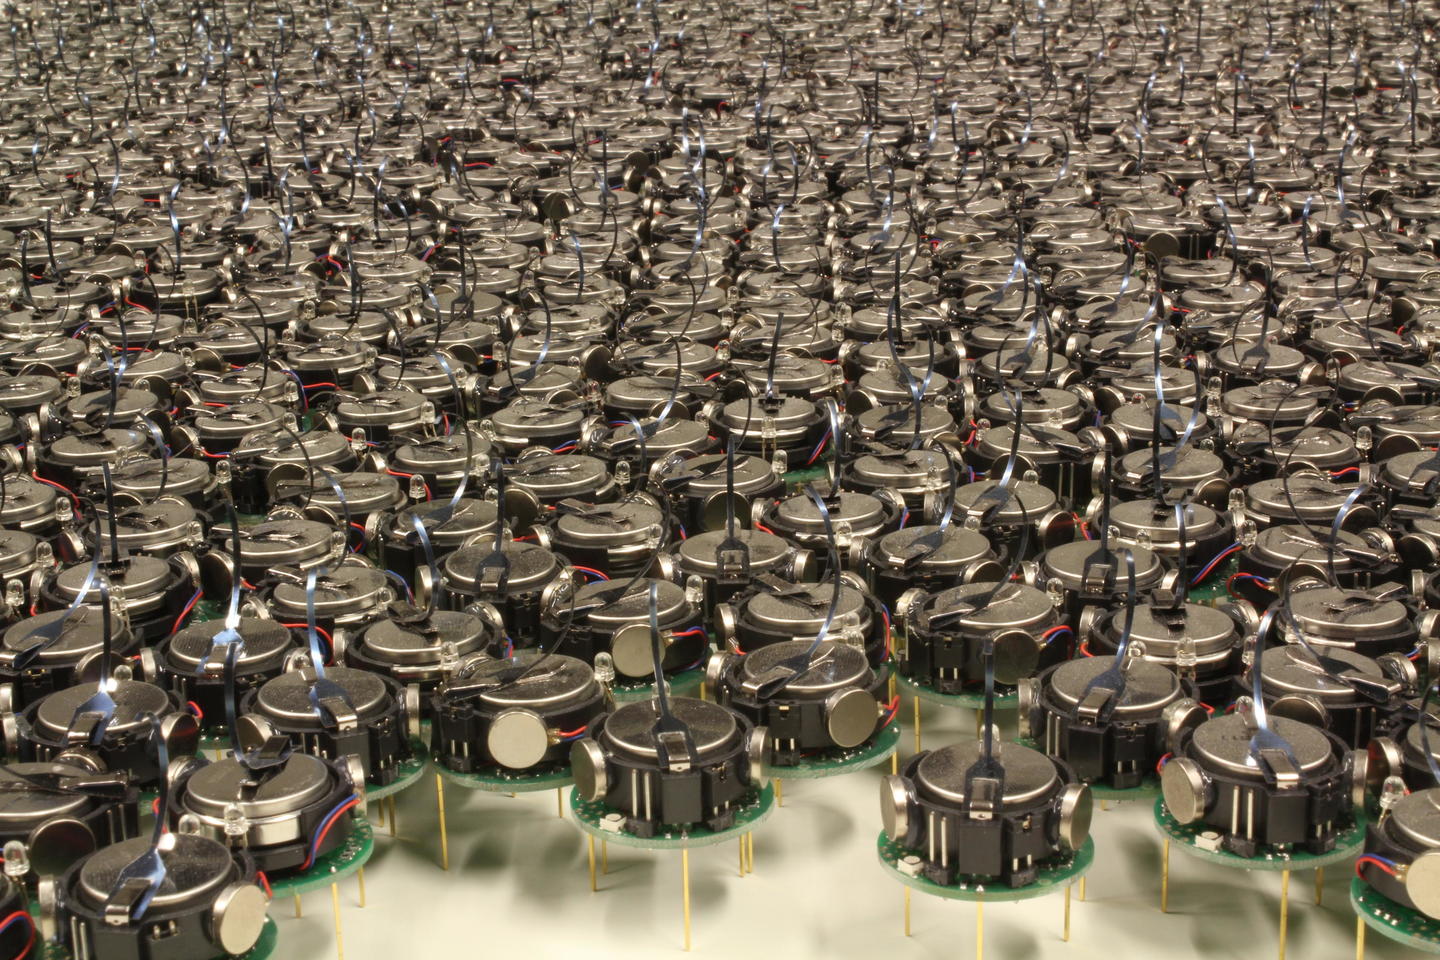 Swarm of kilobots  clustered together